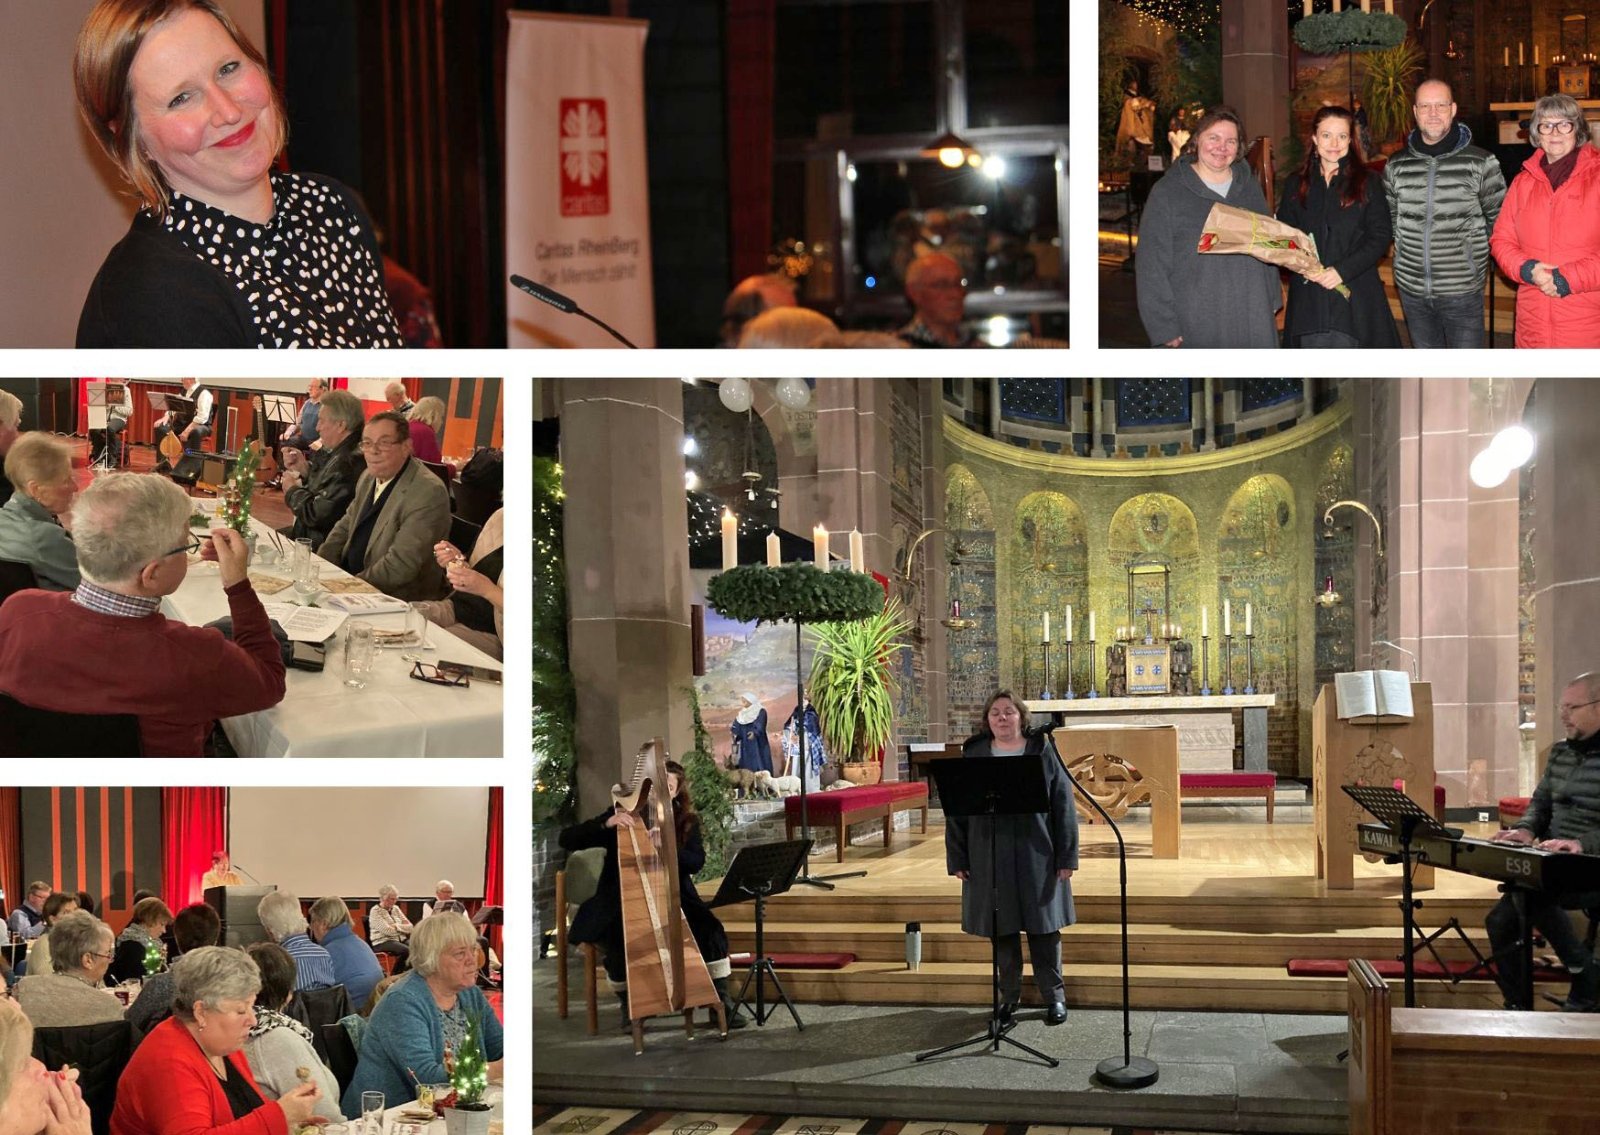 Impressionen von der Dankeschön-Feier. (c) Caritas RheinBerg